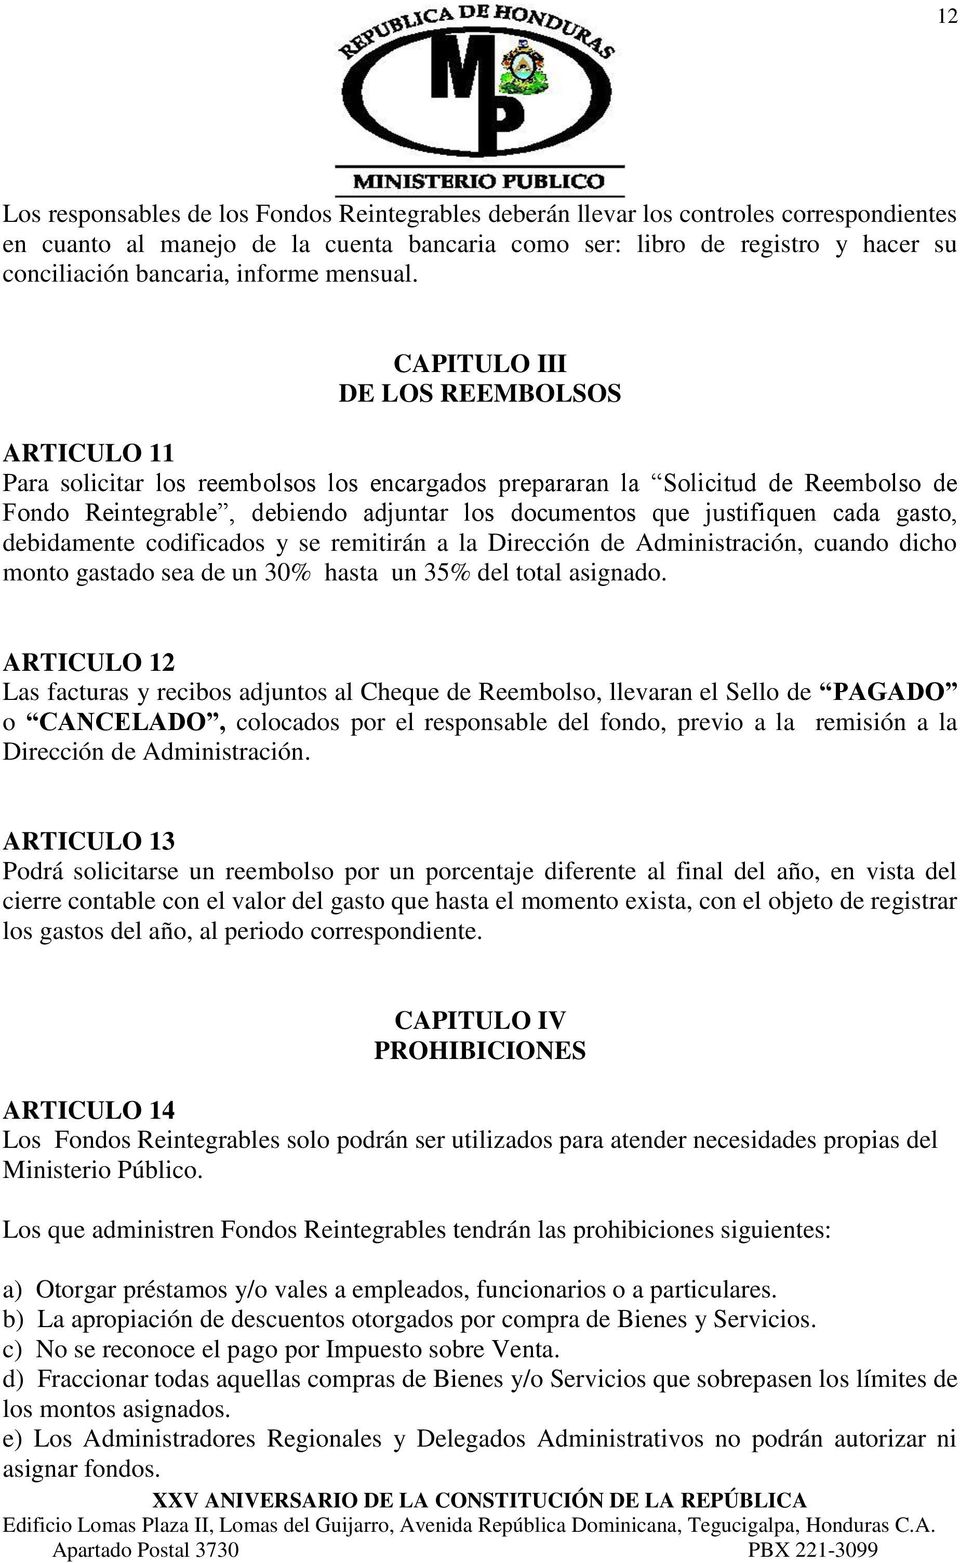 CAPITULO III DE LOS REEMBOLSOS ARTICULO 11 Para solicitar los reembolsos los encargados prepararan la Solicitud de Reembolso de Fondo Reintegrable, debiendo adjuntar los documentos que justifiquen